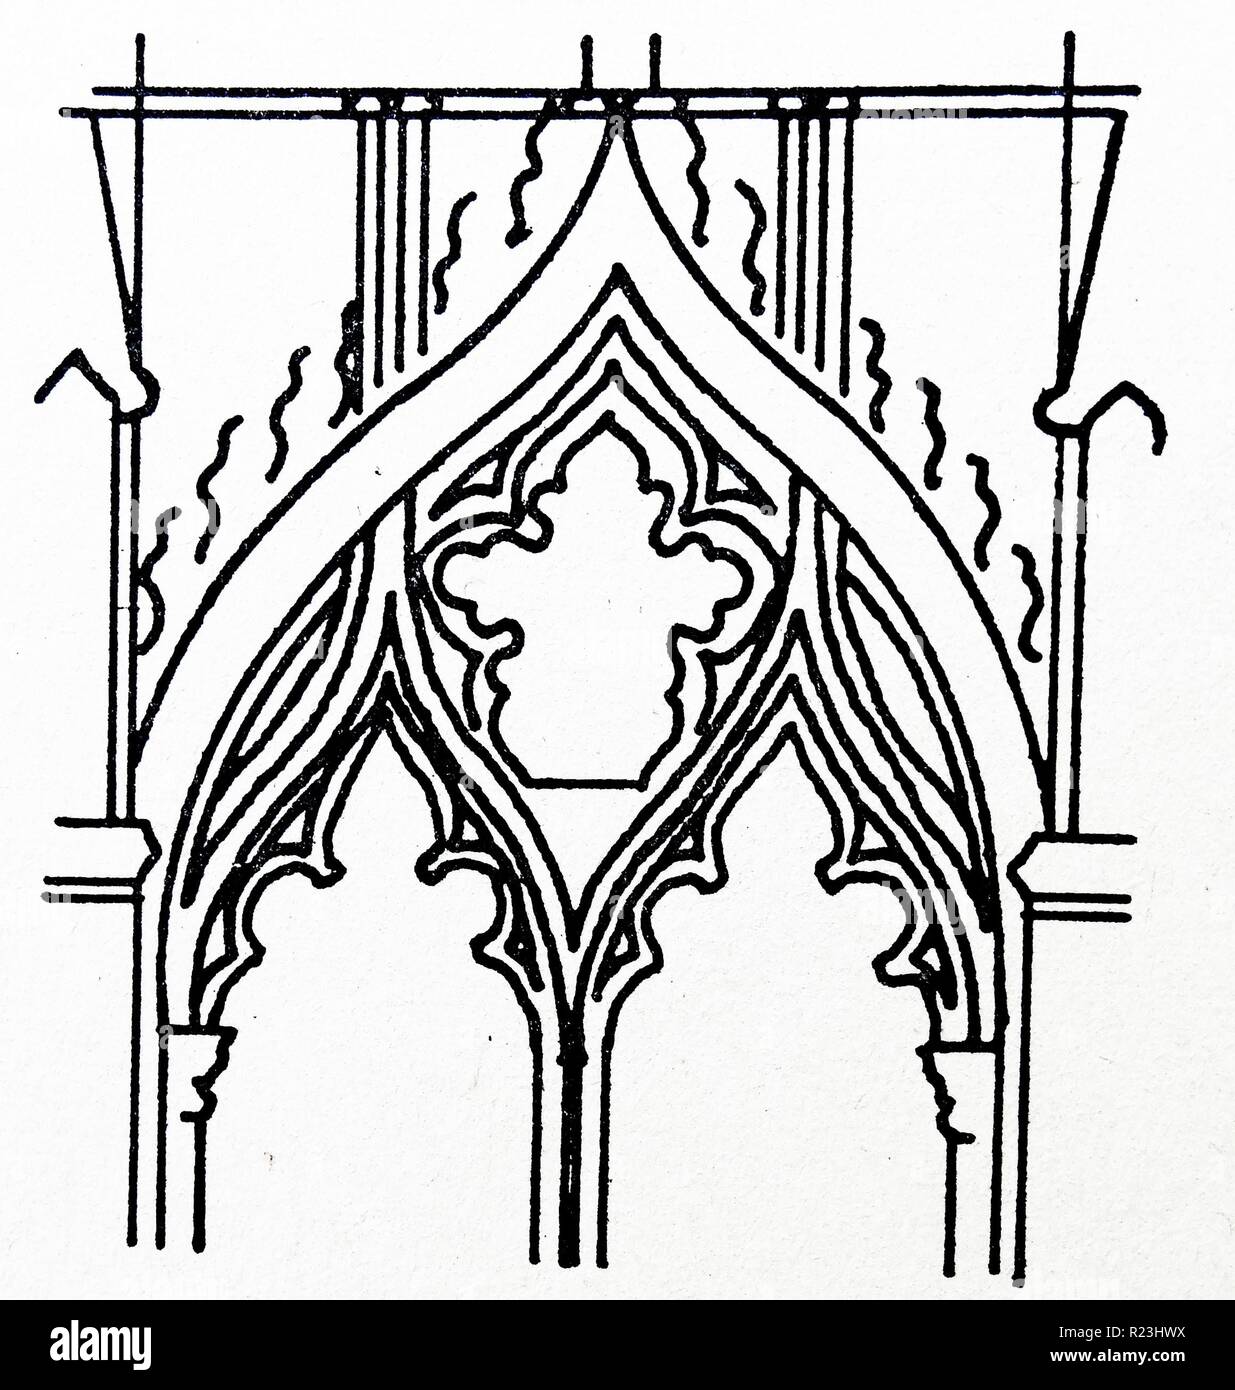 Skizze der Dame Kapelle der Kathedrale von Ely. Ely Cathedral ist die wichtigste Kirche der Diözese von Ely, Cambridgeshire, England, und ist der Sitz des Bischofs von Ely und ein Wahlrecht Bischof, der Bischof von Huntingdon. Vom 10. Jahrhundert Stockfoto